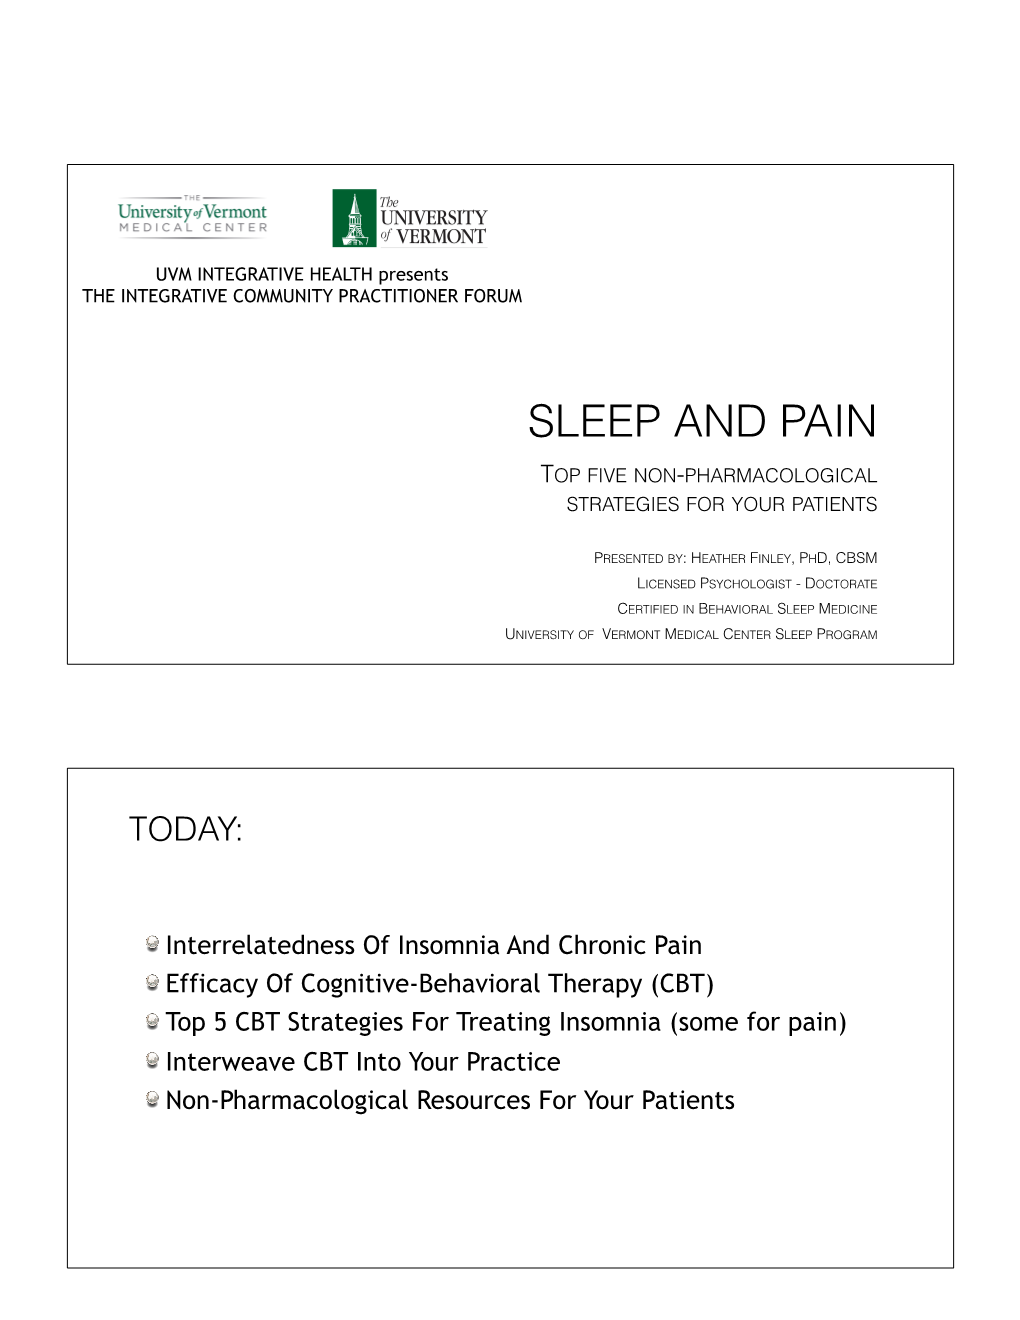 Sleep and Pain 2017 Slides